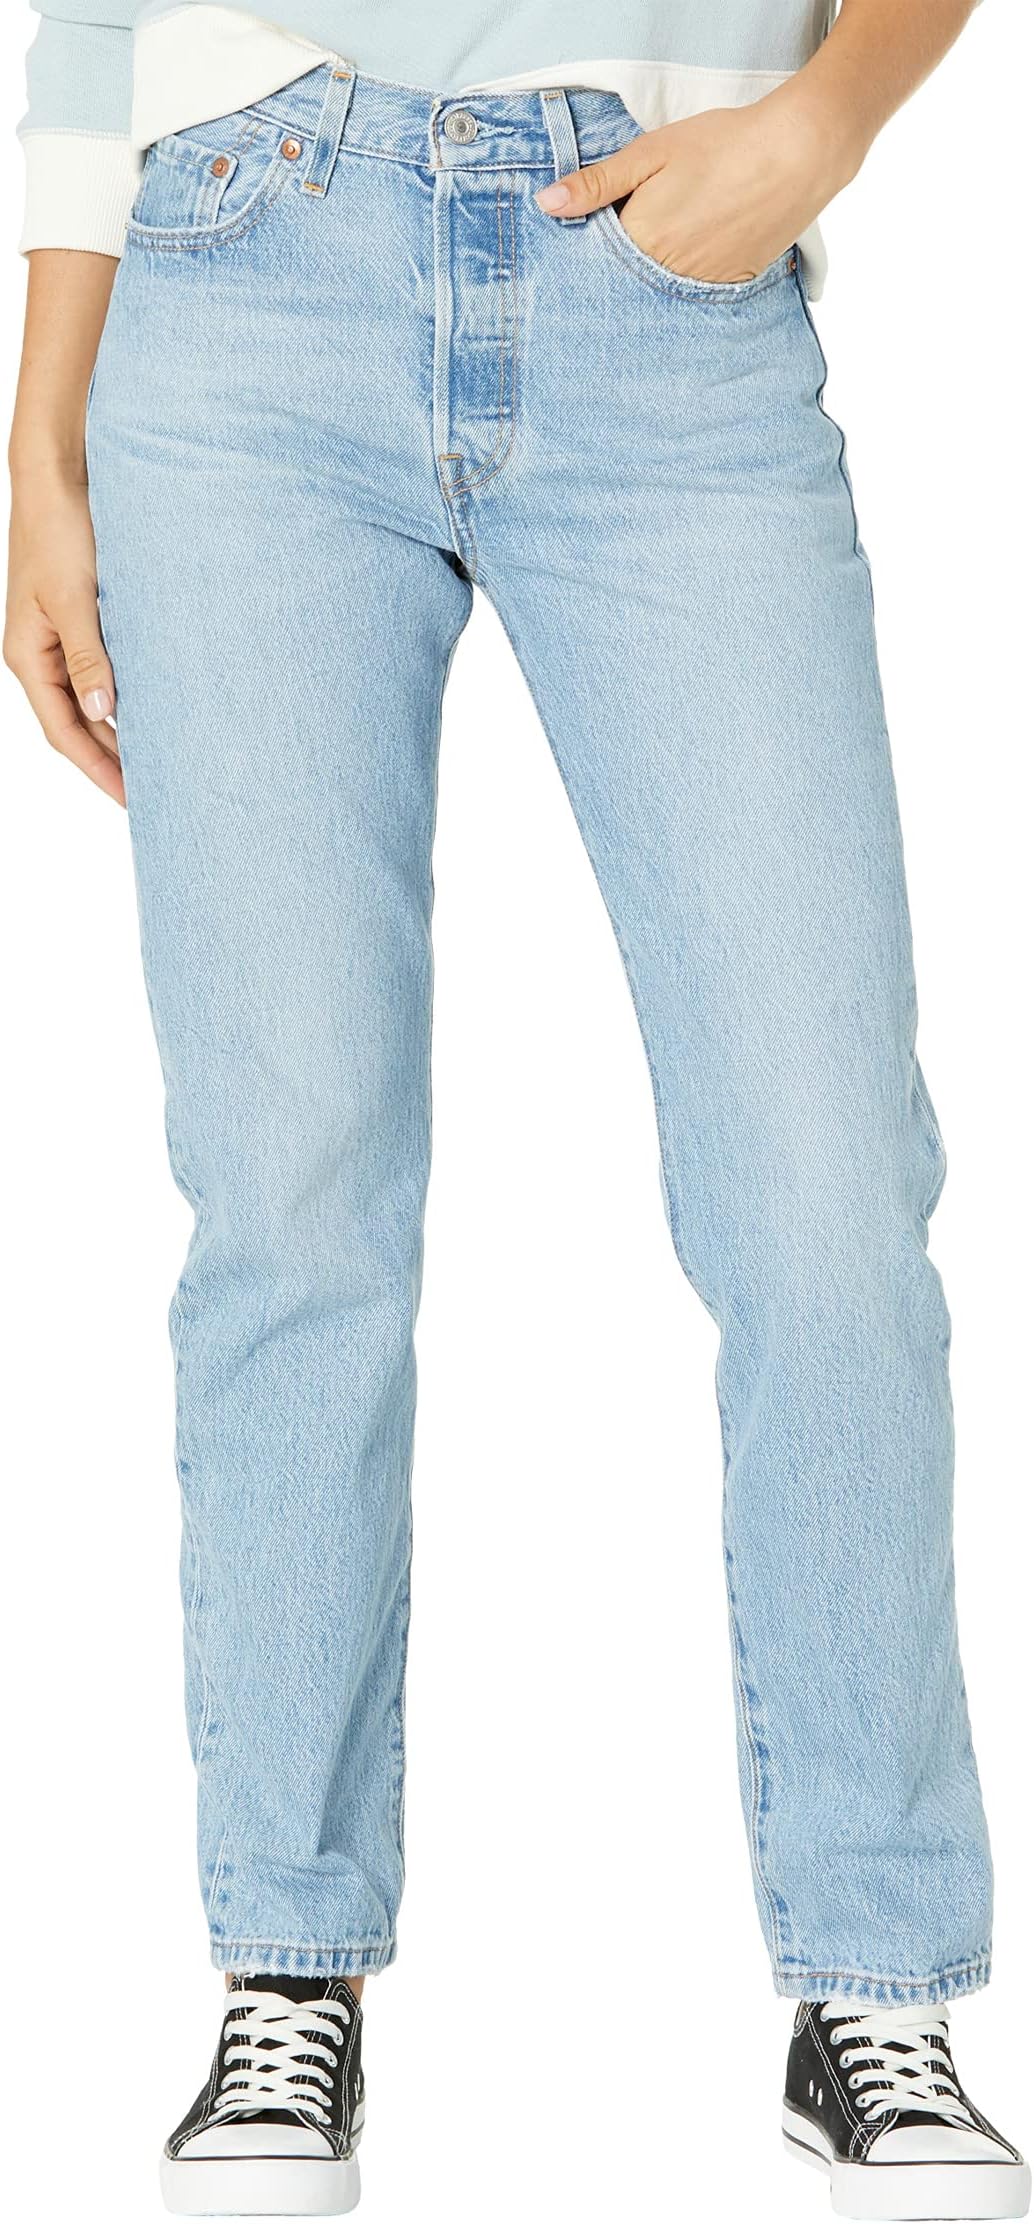 Джинсы 501 Jeans Levi's, цвет Luxor Lust